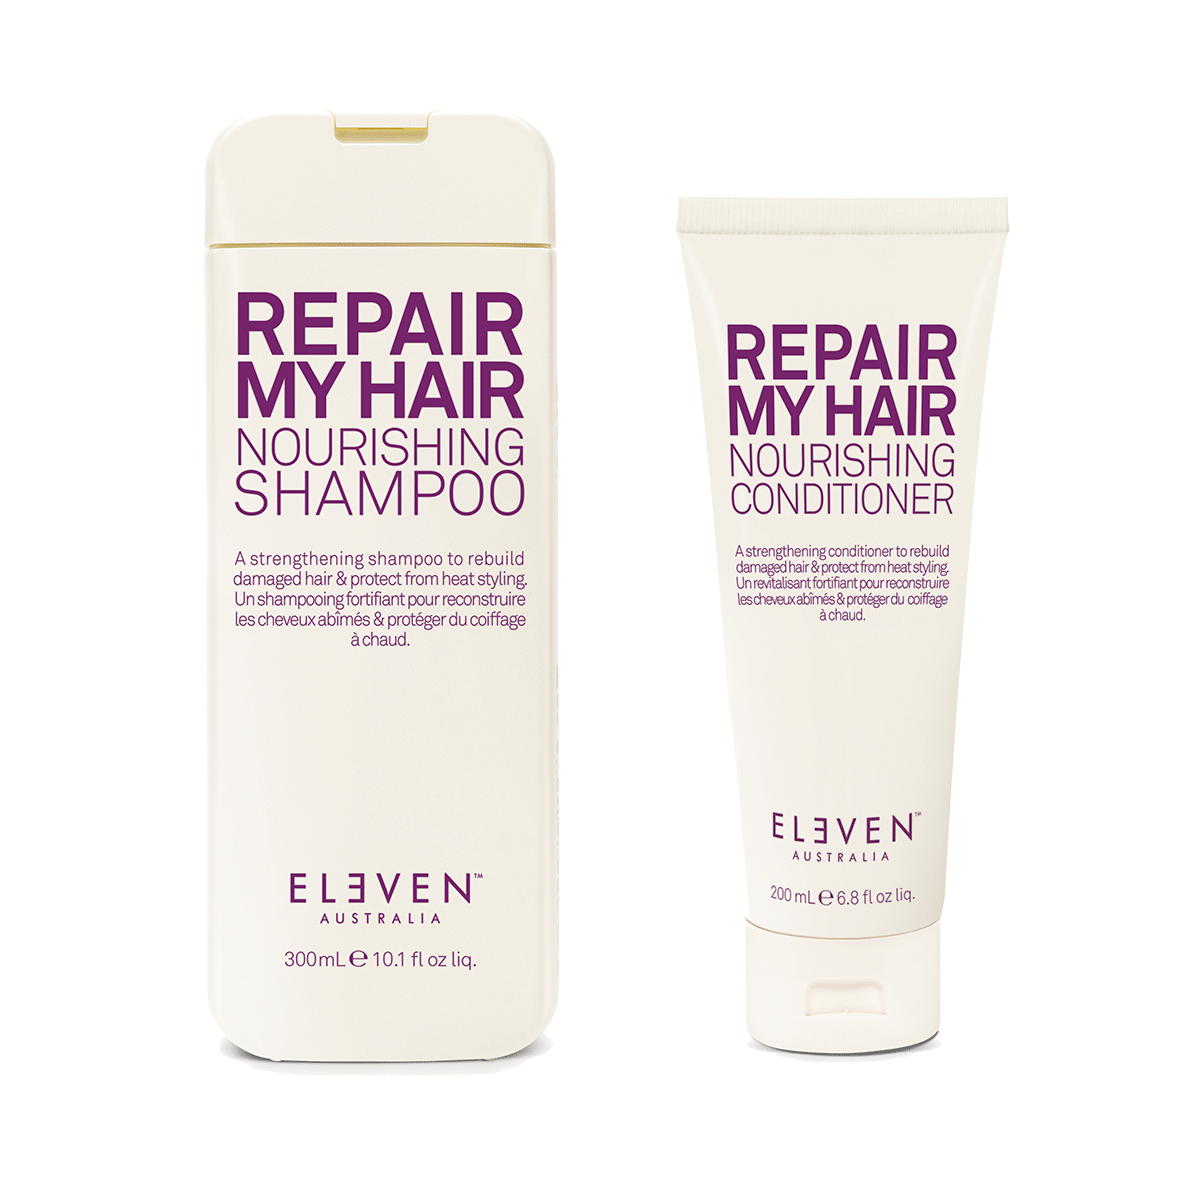 Eleven Australia Repair My Hair Nourishing Duo Shampoo 300ml + Conditioner 300ml